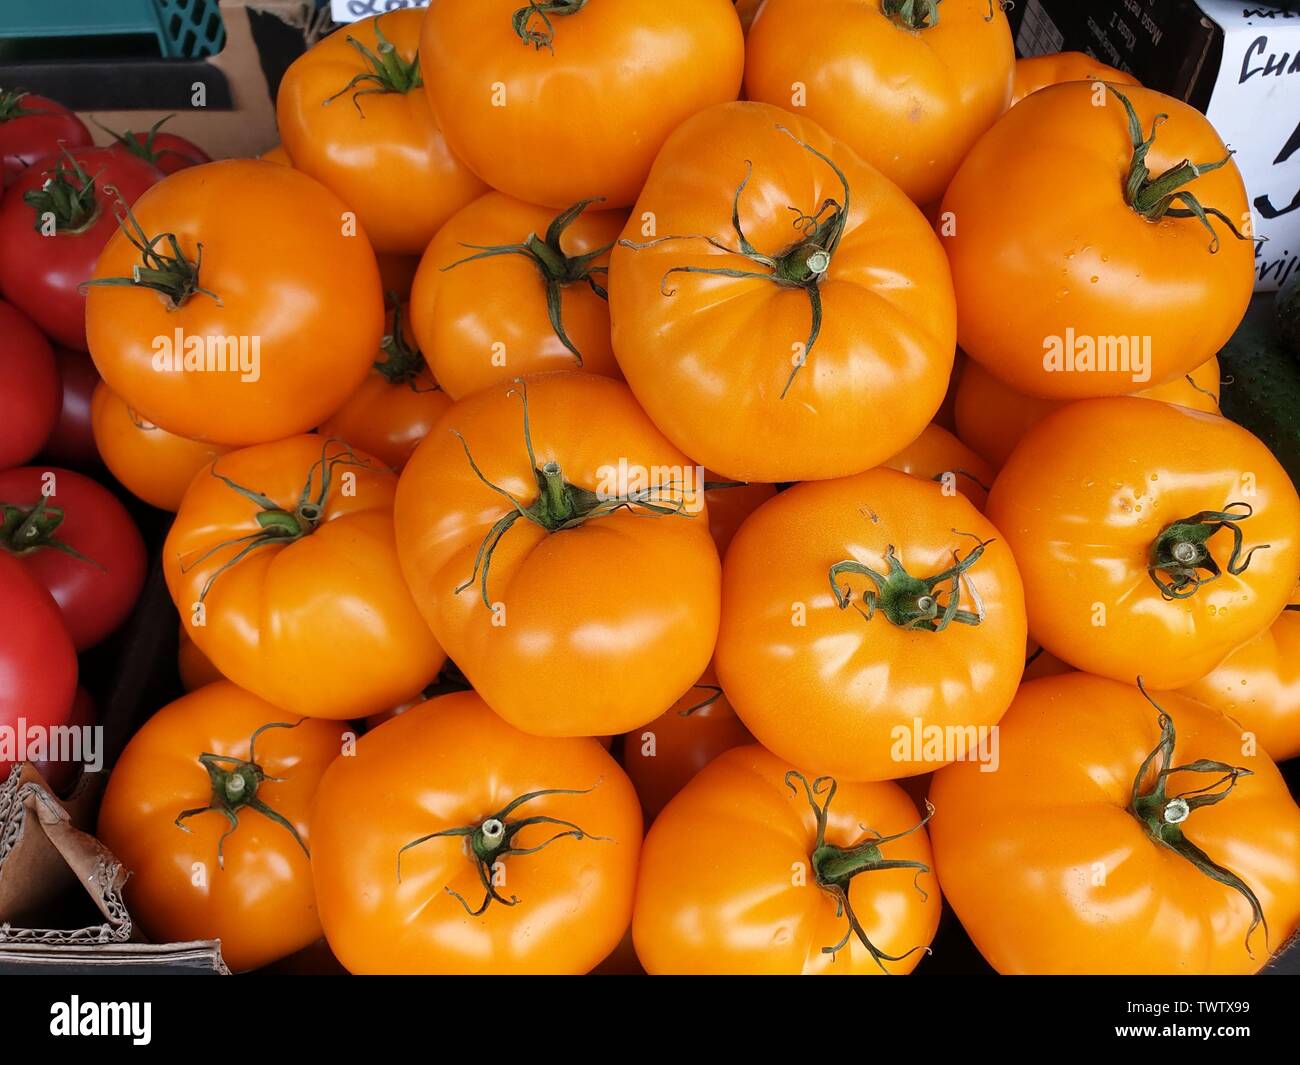 Image de tomates fraîches de l'orange-jaune Banque D'Images